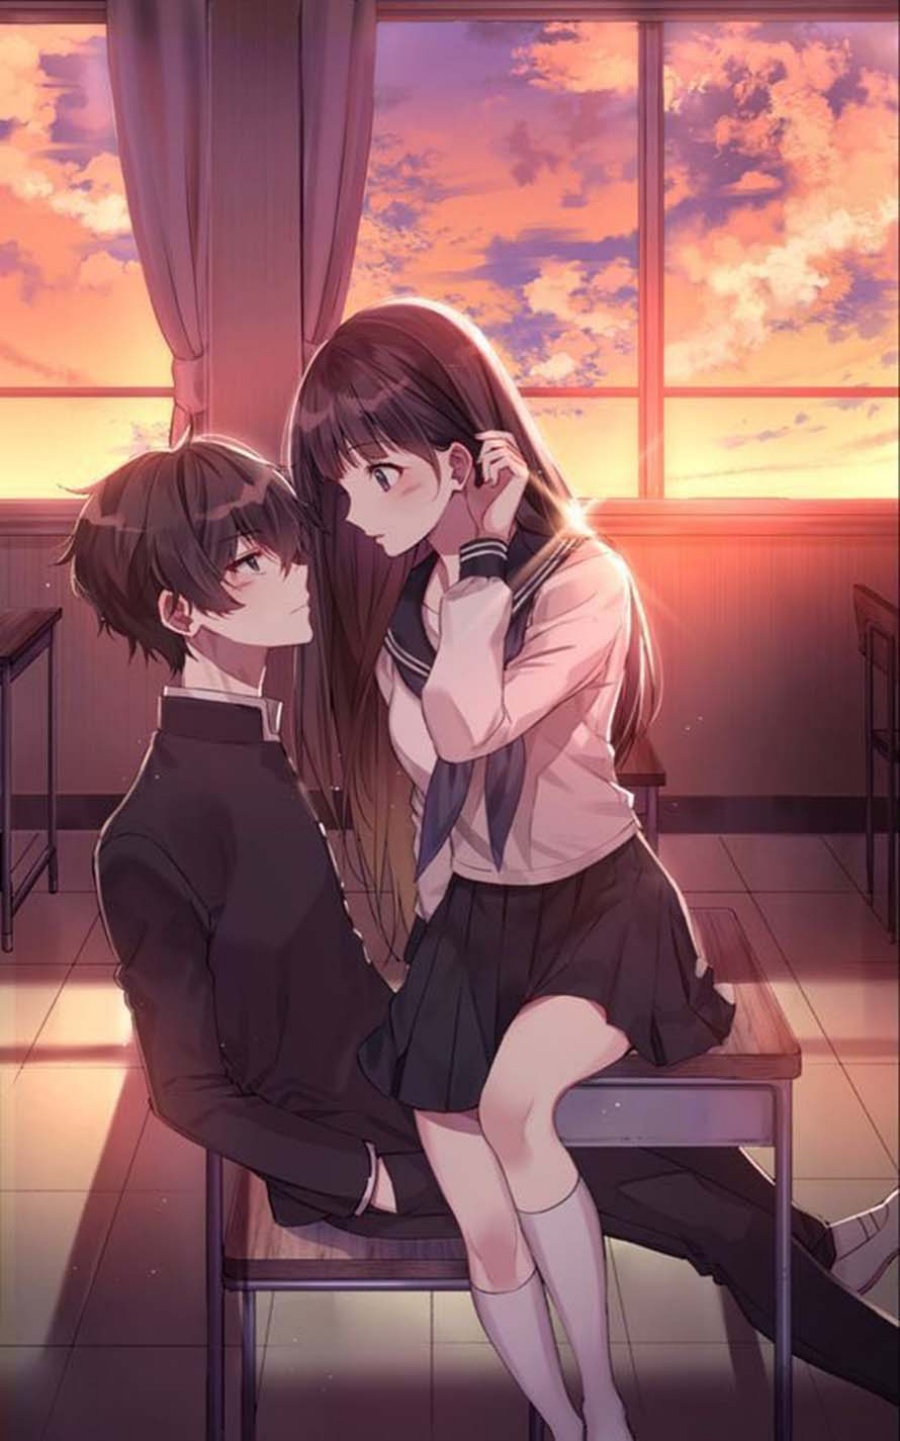 Ảnh cặp đôi Anime sẽ đưa bạn vào một thế giới đầy màu sắc và đáng yêu. Hình ảnh những cặp đôi Anime tình tứ, lãng mạn sẽ thu hút bạn ngay từ cái nhìn đầu tiên.